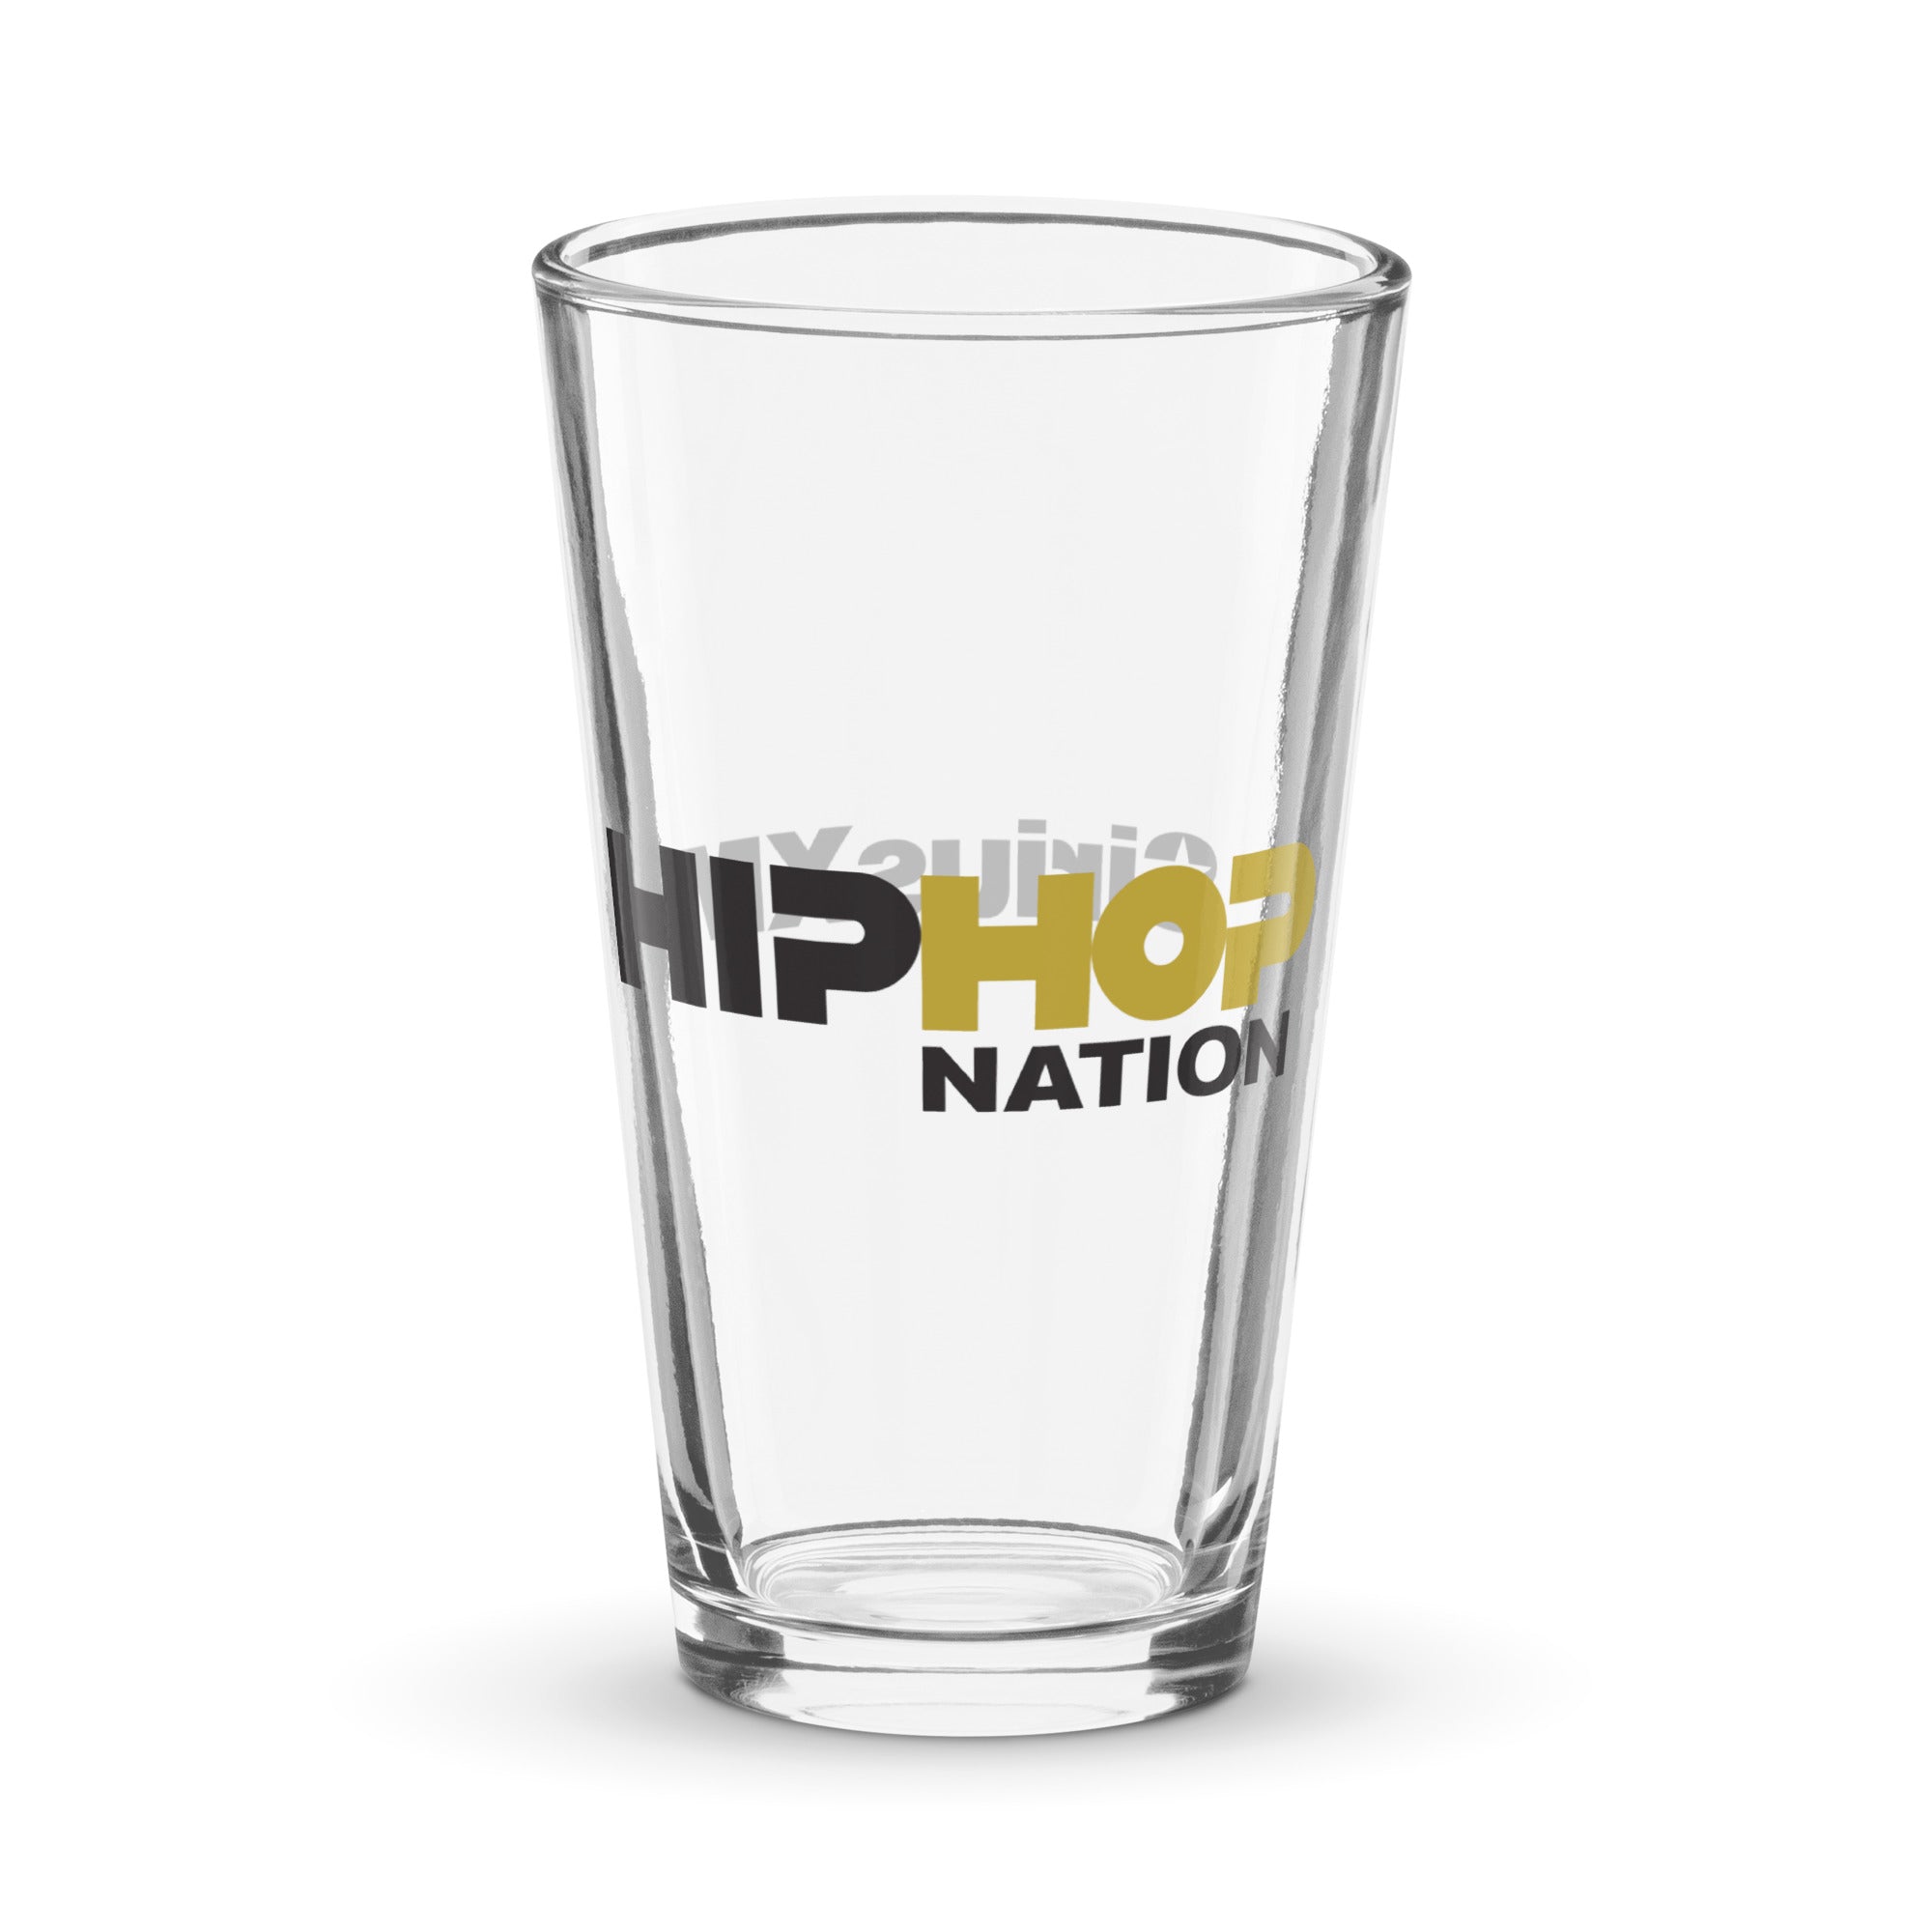 Hip-Hop Nation: Pint Glass